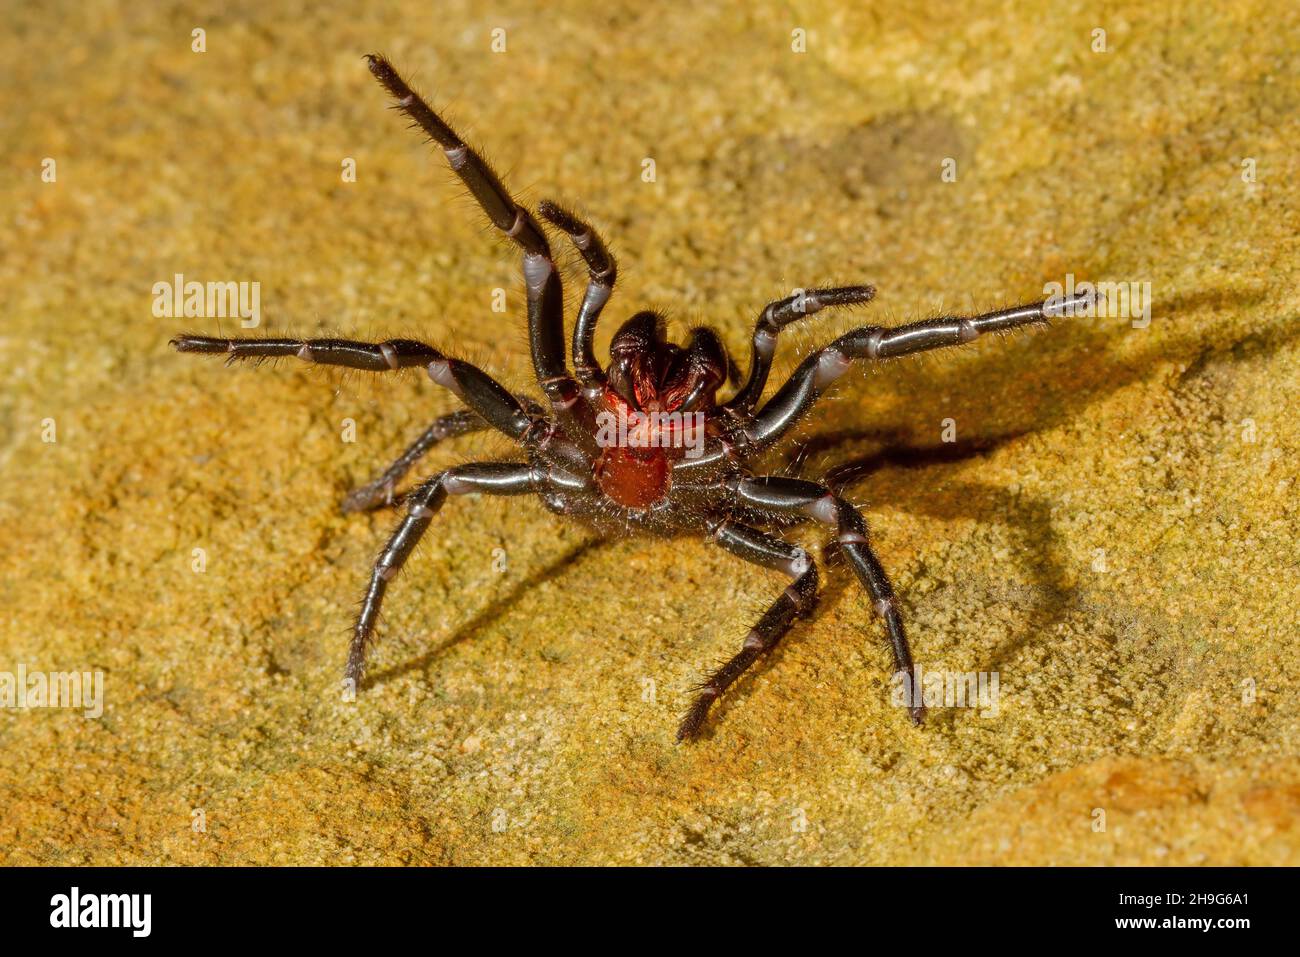 Sydney Funnel-Web Spider en posture défensive Banque D'Images